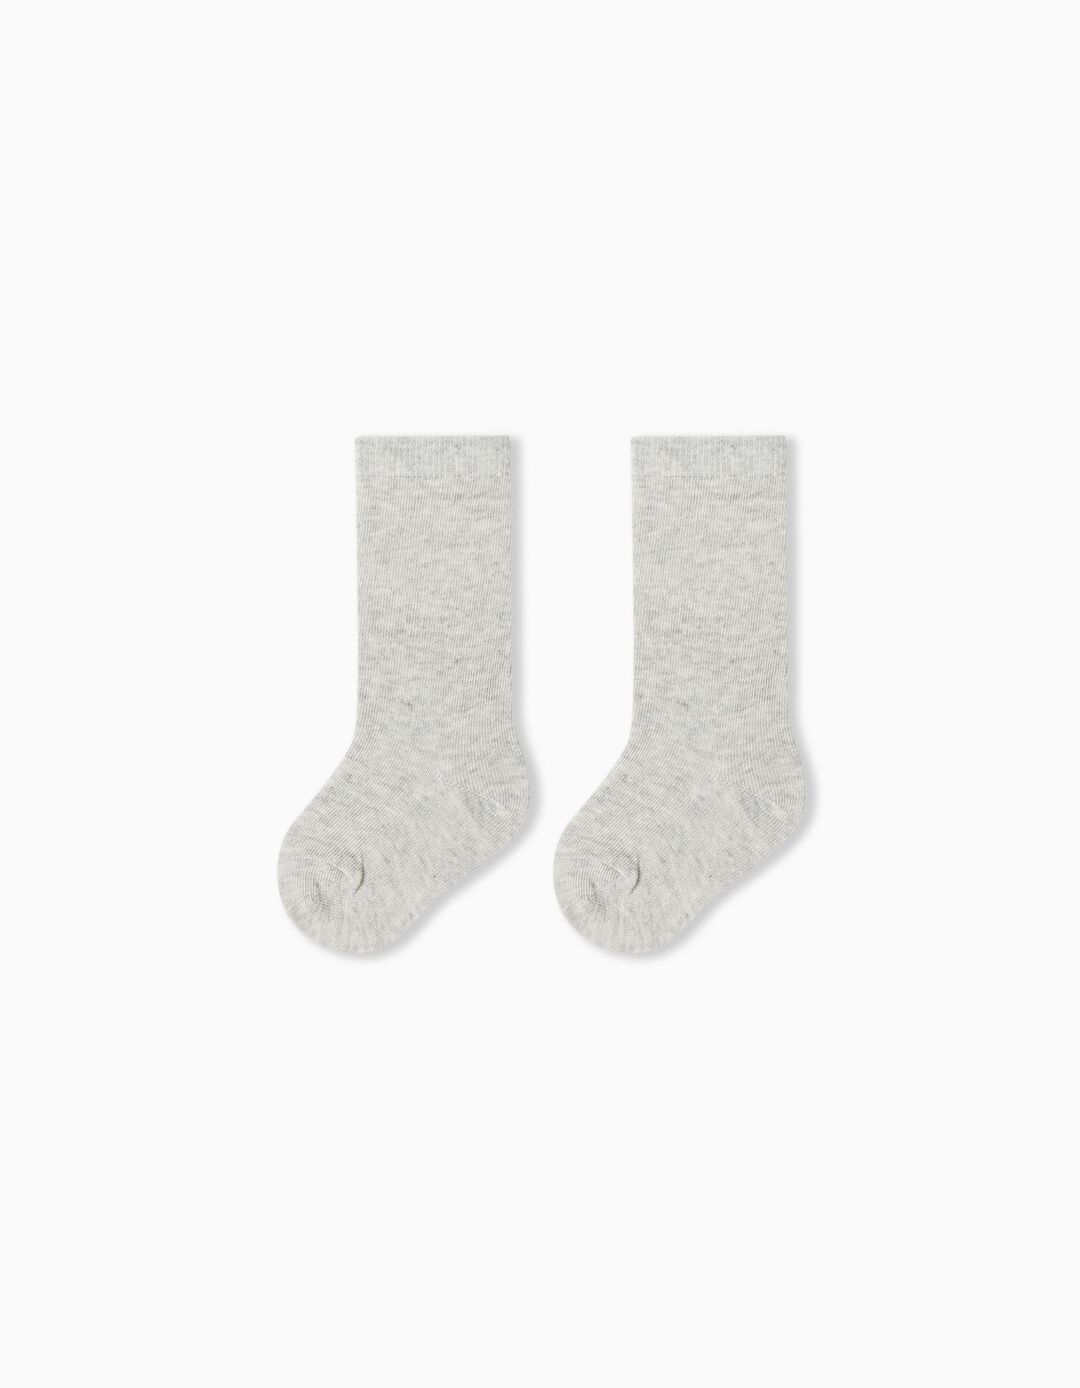 Pack 2 Pairs of High Socks, Baby Girl, Light Gray